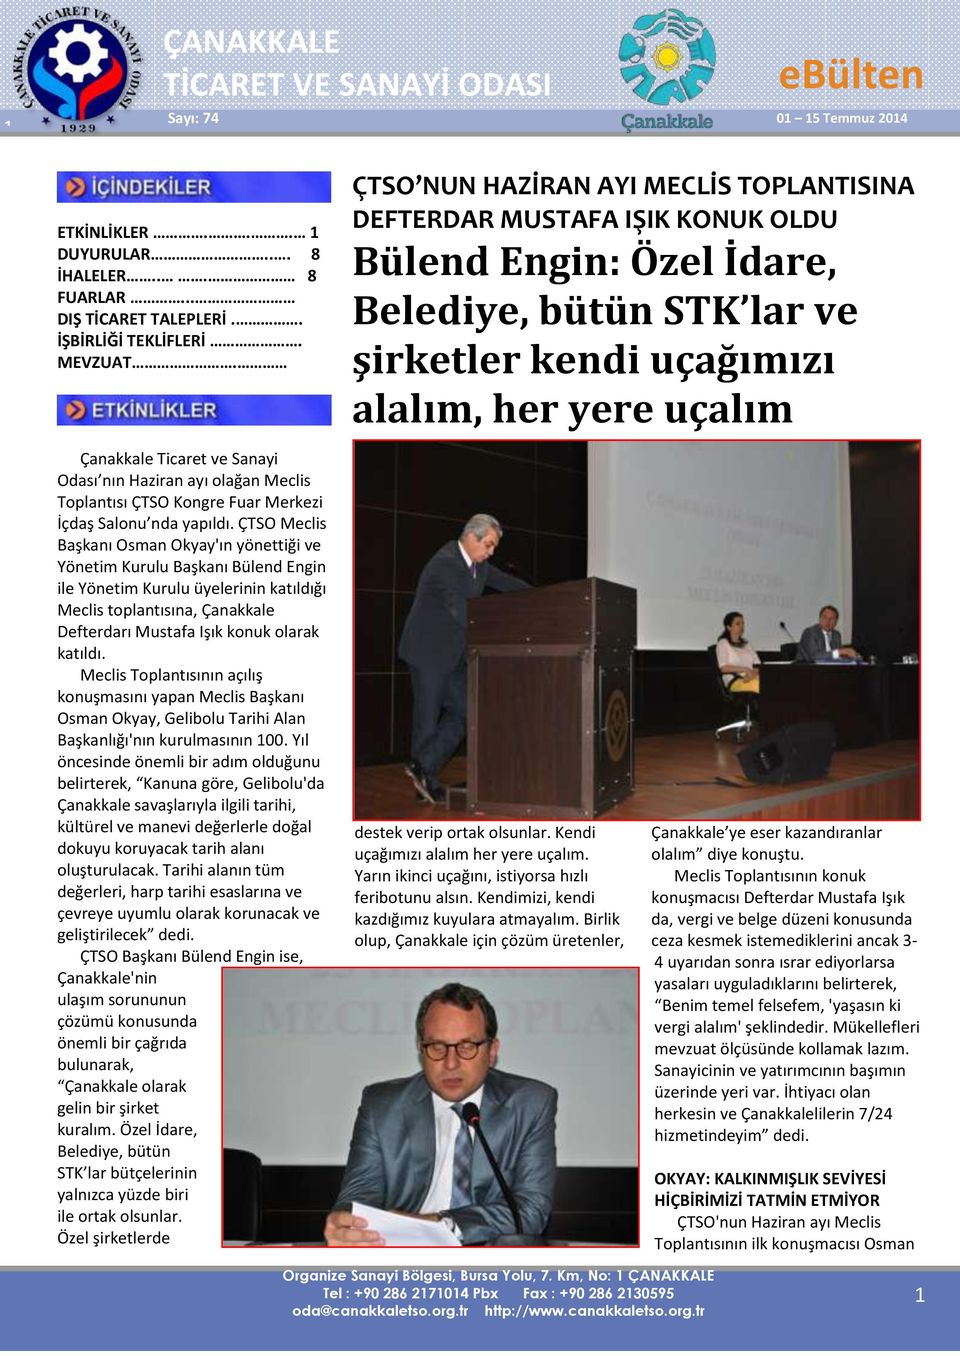 ÇTSO Meclis Başkanı Osman Okyay'ın yönettiği ve Yönetim Kurulu Başkanı Bülend Engin ile Yönetim Kurulu üyelerinin katıldığı Meclis toplantısına, Çanakkale Defterdarı Mustafa Işık konuk olarak katıldı.